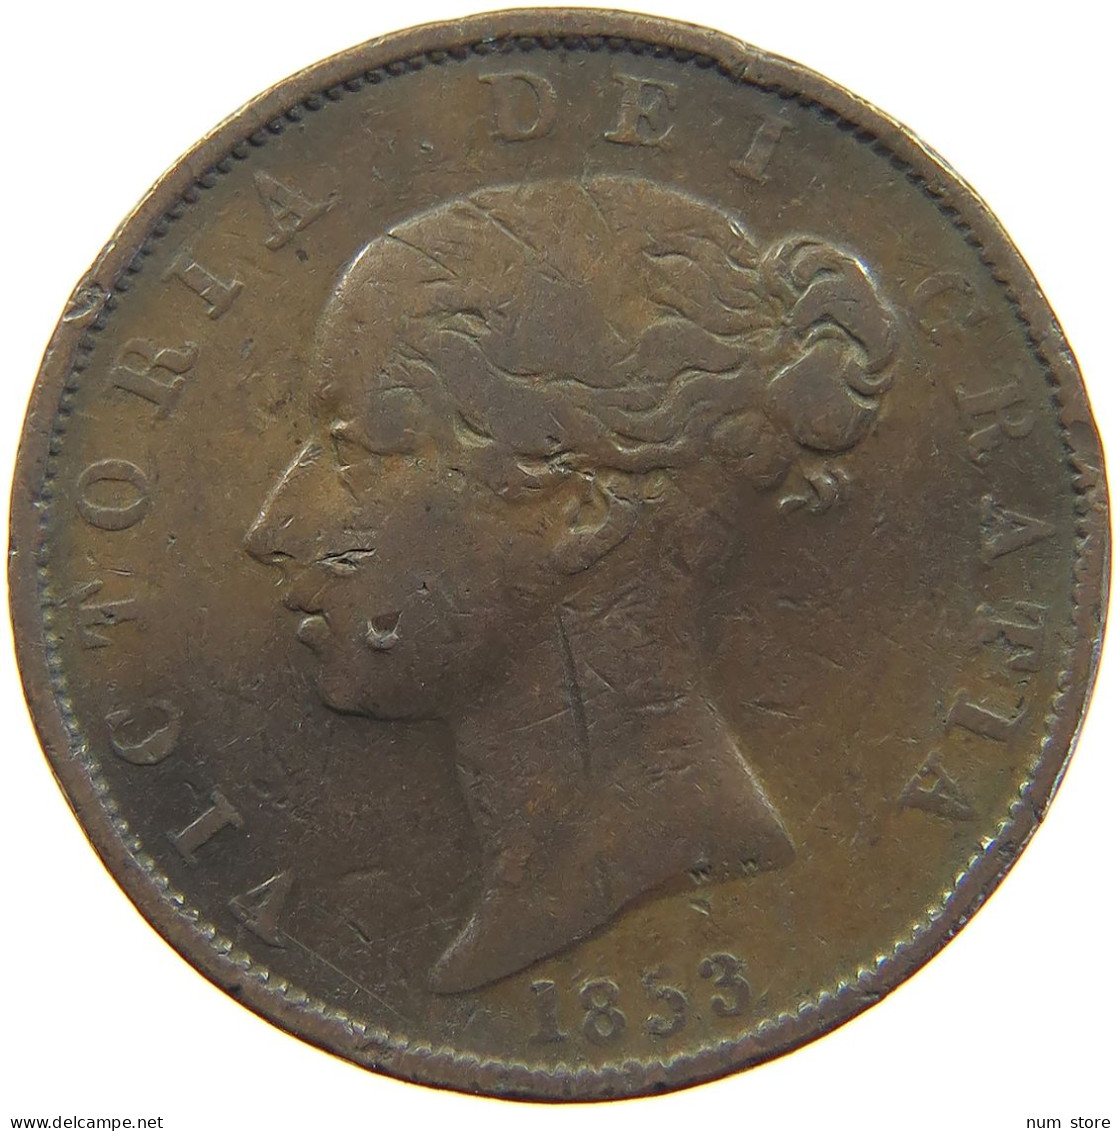 GREAT BRITAIN HALFPENNY 1853 Victoria 1837-1901 #c046 0073 - C. 1/2 Penny